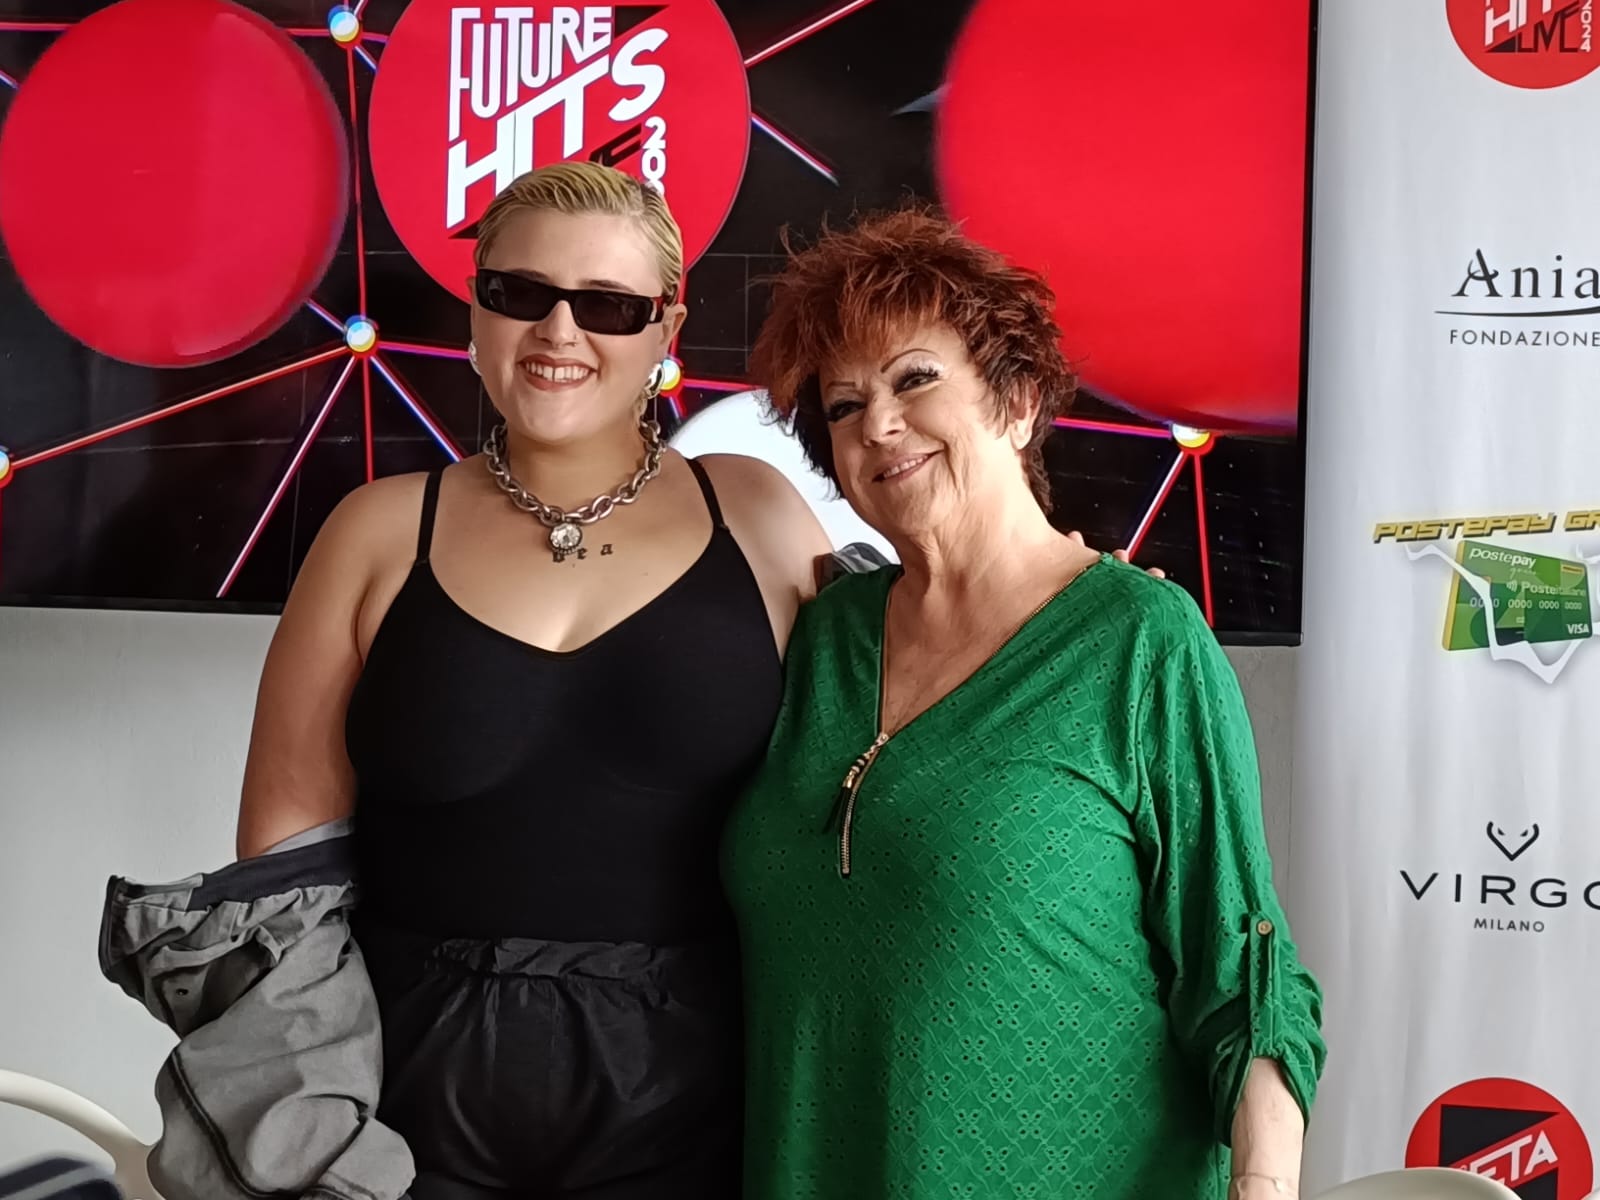 Big Mama e Orietta Berti insieme alla conferenza stampa di presentazione dei Radio Zeta Future Hits Live al Foro Italico di Roma